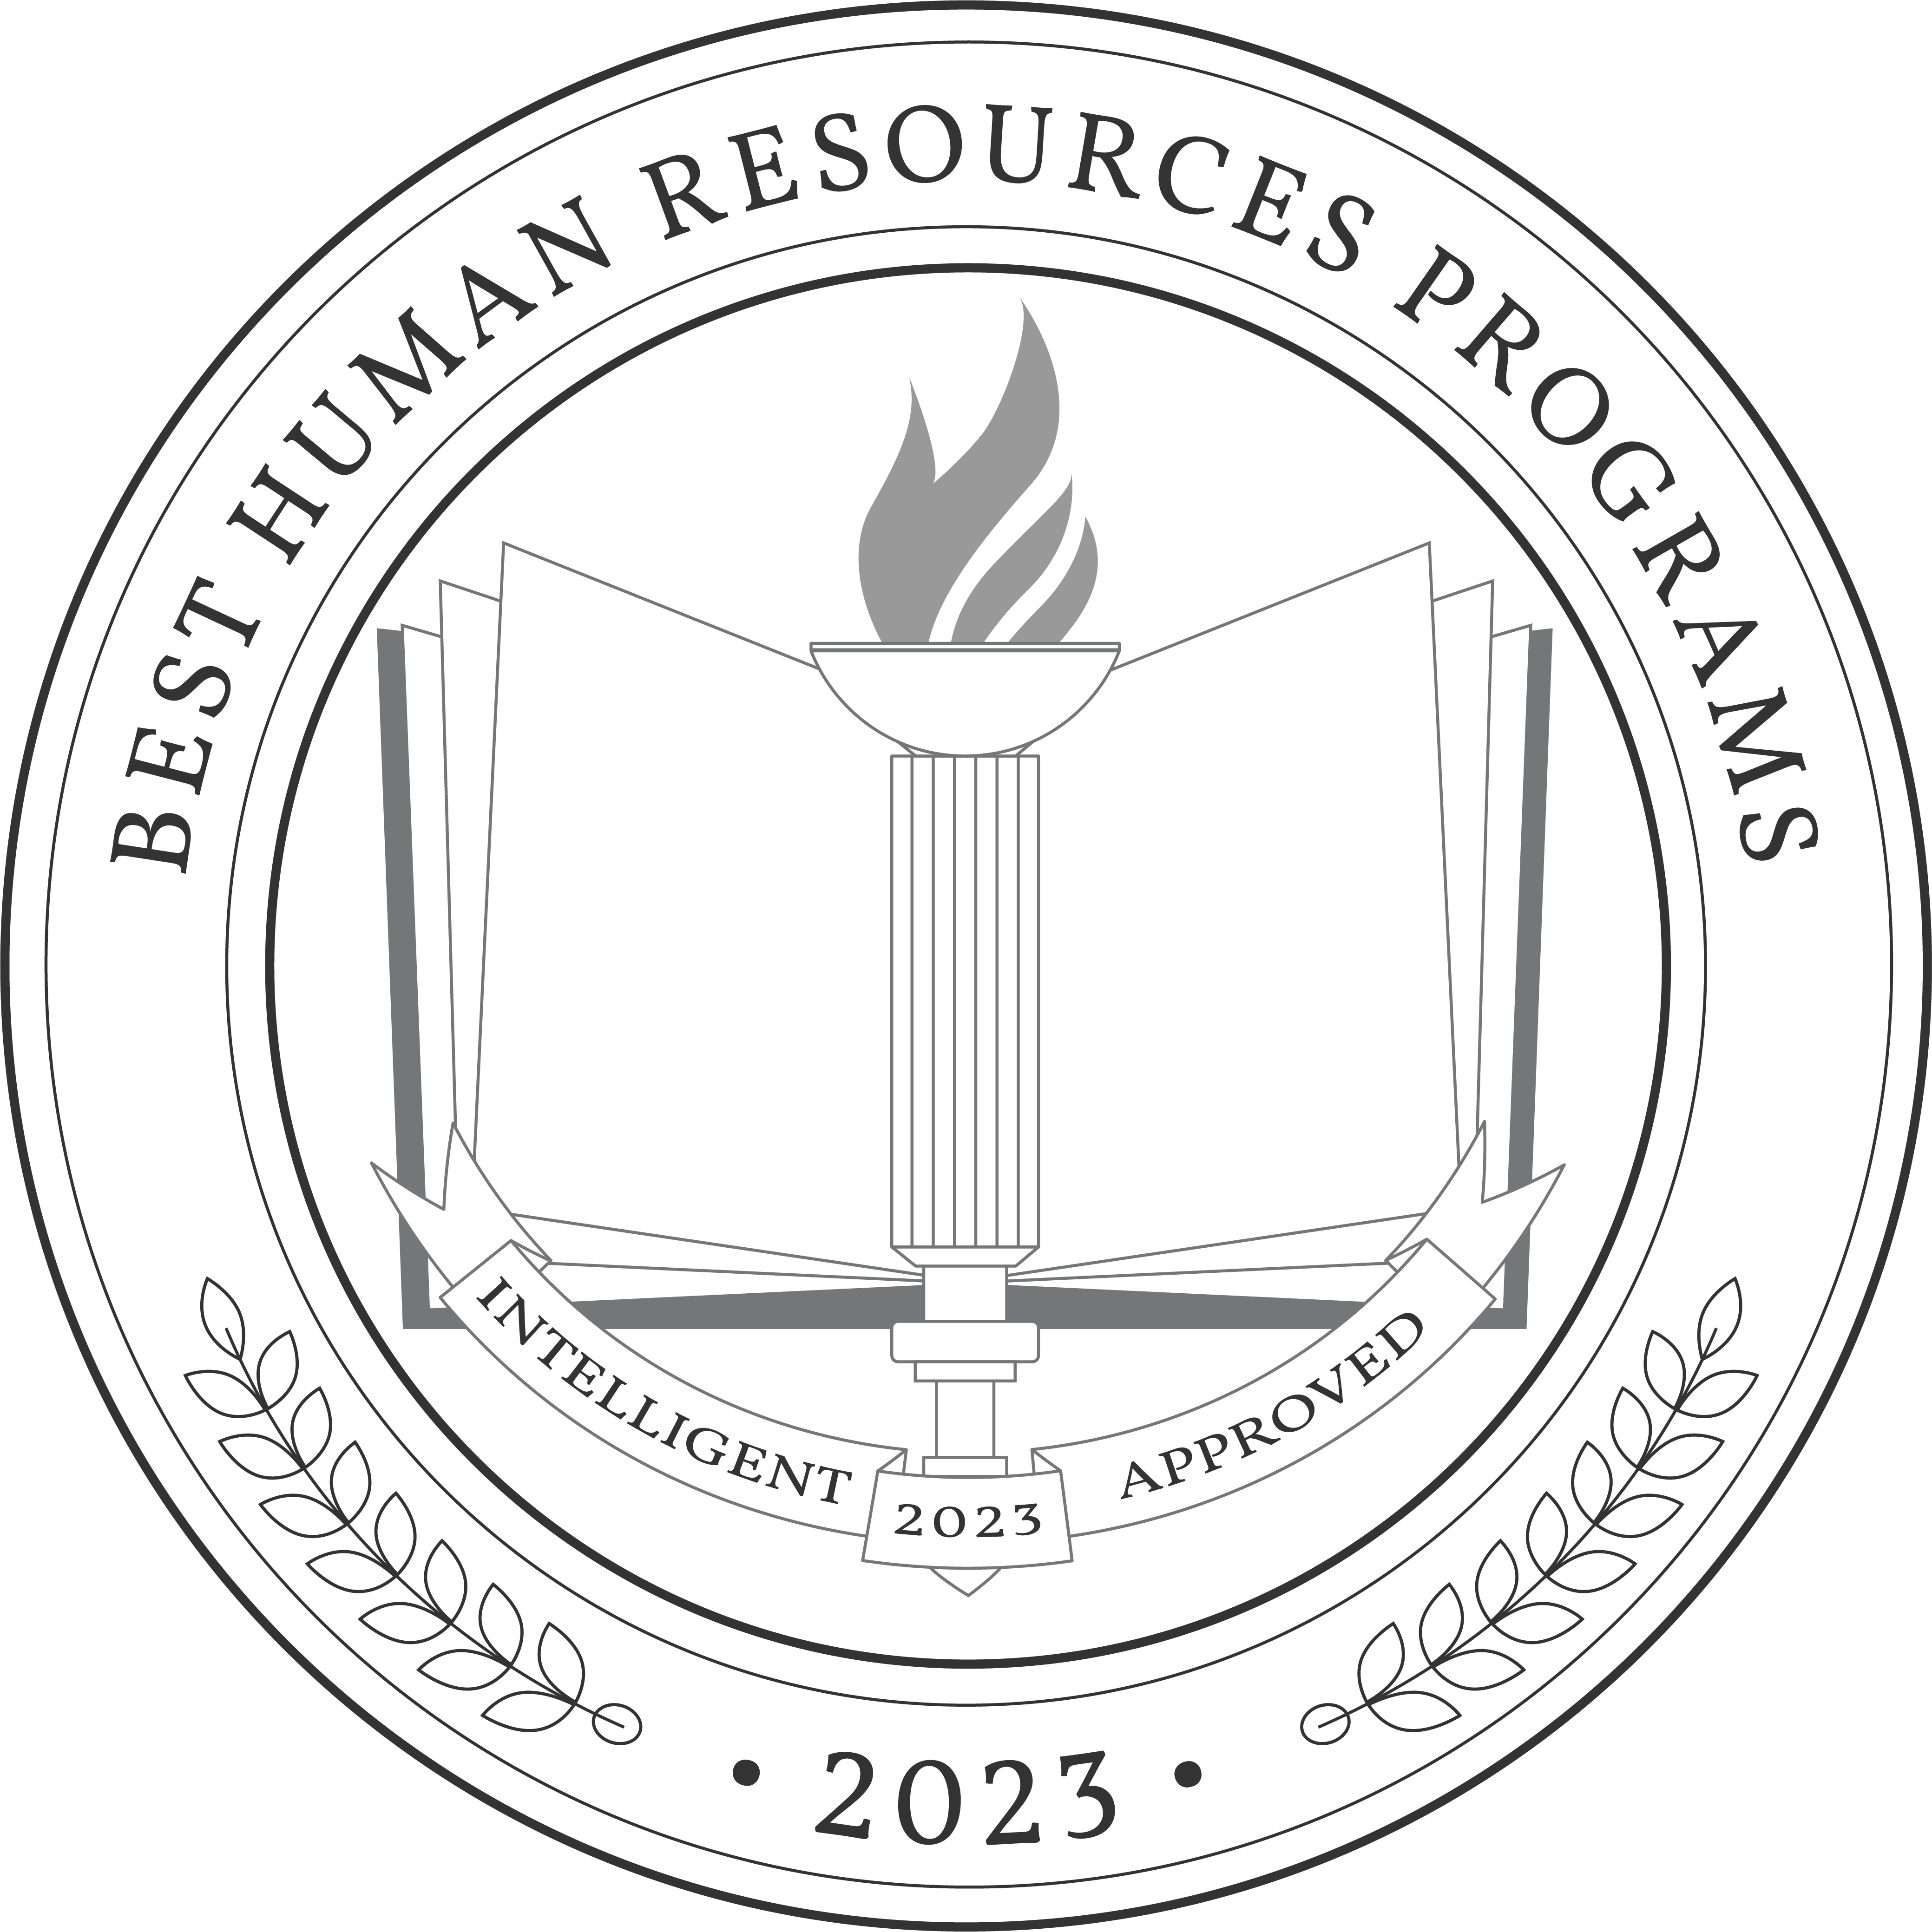 Best Human Resources Programs badge